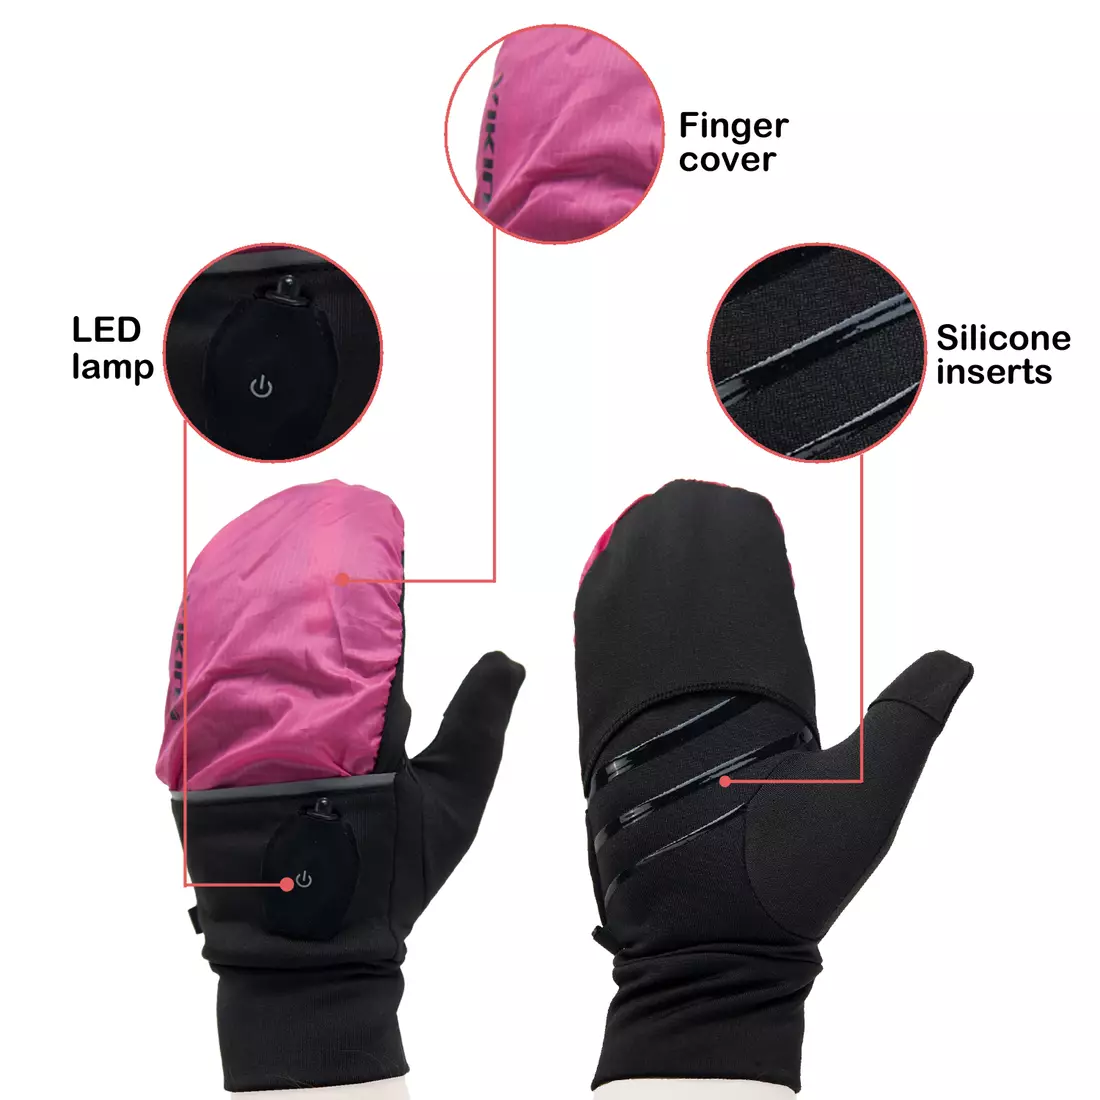 VIKING zimowe rękawiczki, LED, pokrowiec VERMONT 140/20/0011/42 różowo-czarne